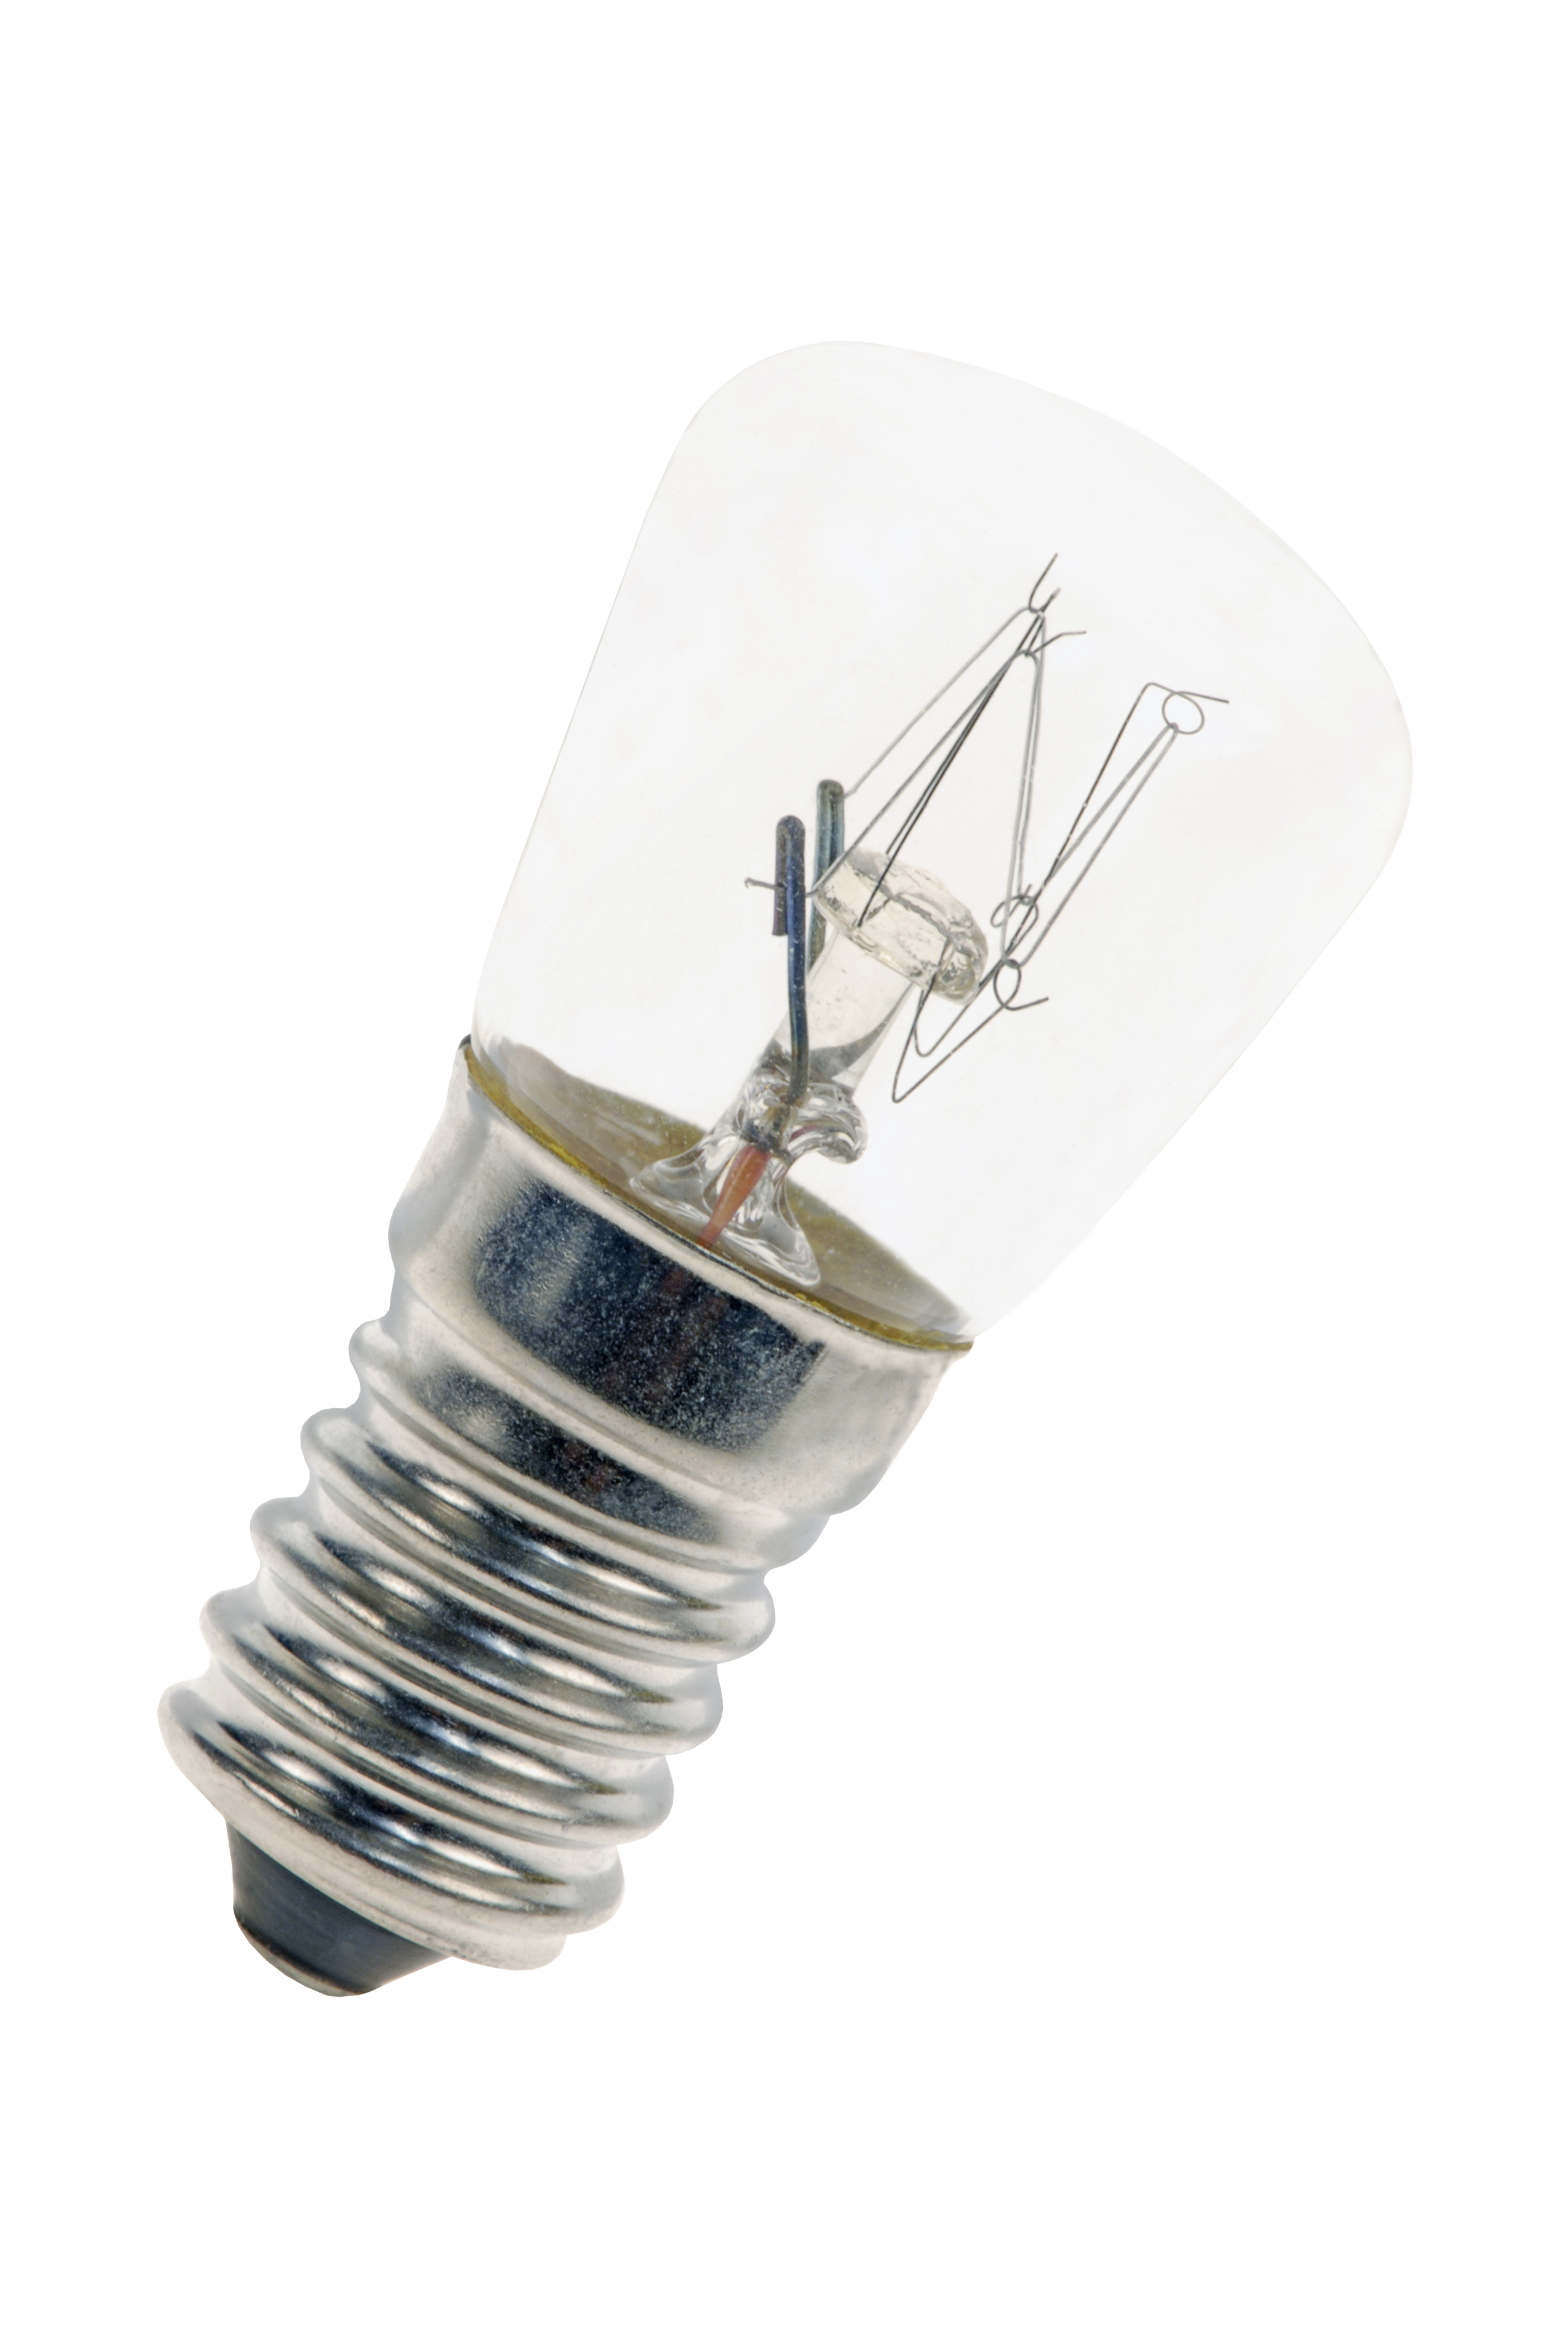 Lampe E14 24V 10W